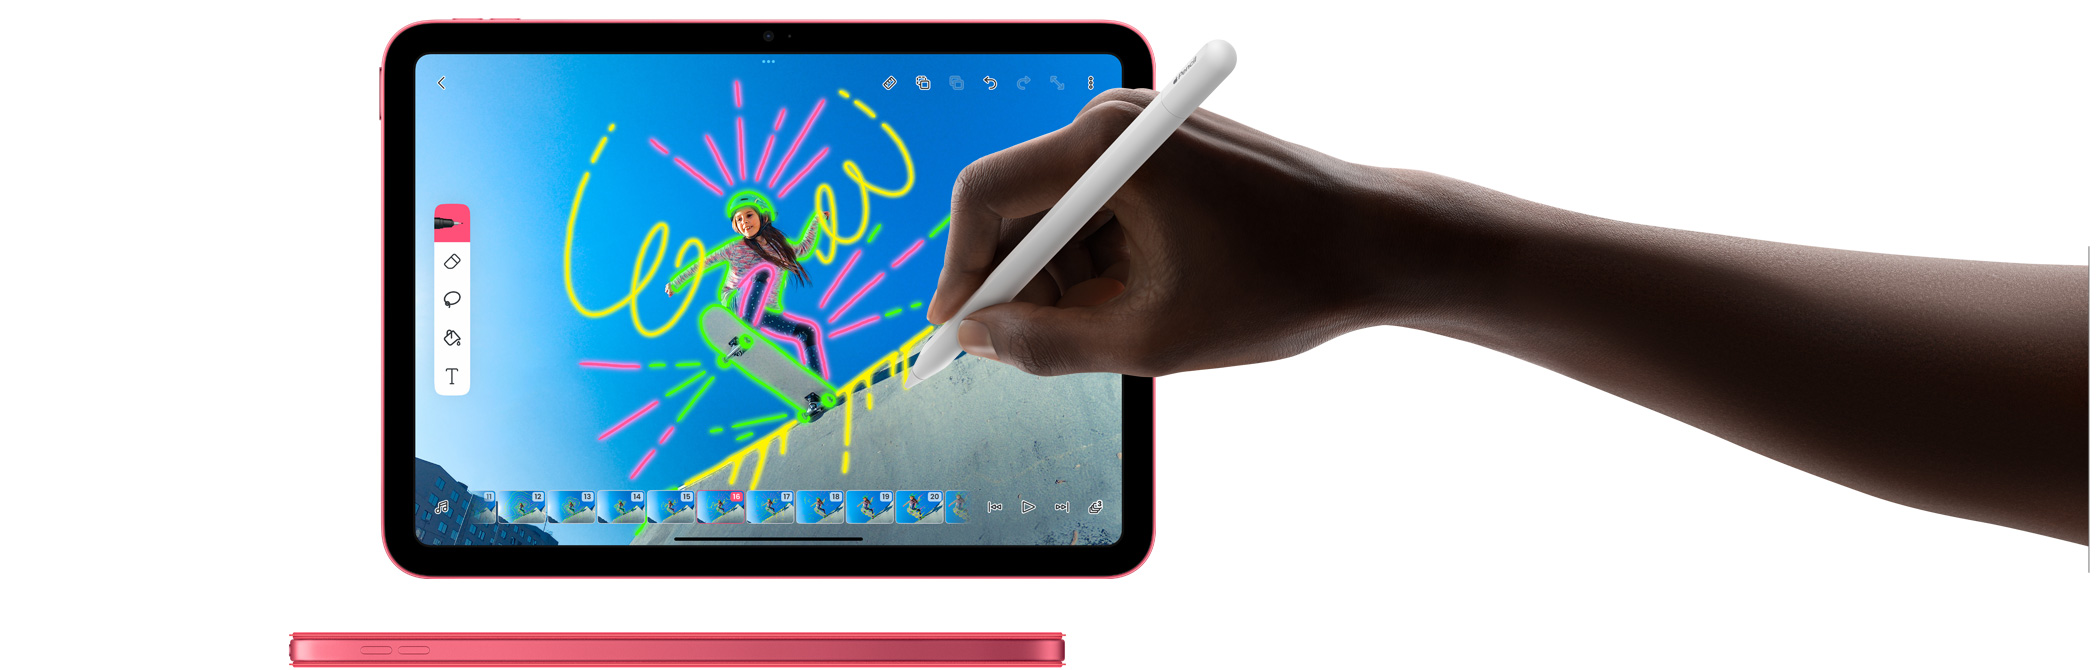 การใช้ Apple Pencil ในแอป FlipaClip และมุมมองด้านข้างของ iPad สีชมพูที่มาพร้อมปก Smart Folio ในสีเดียวกัน